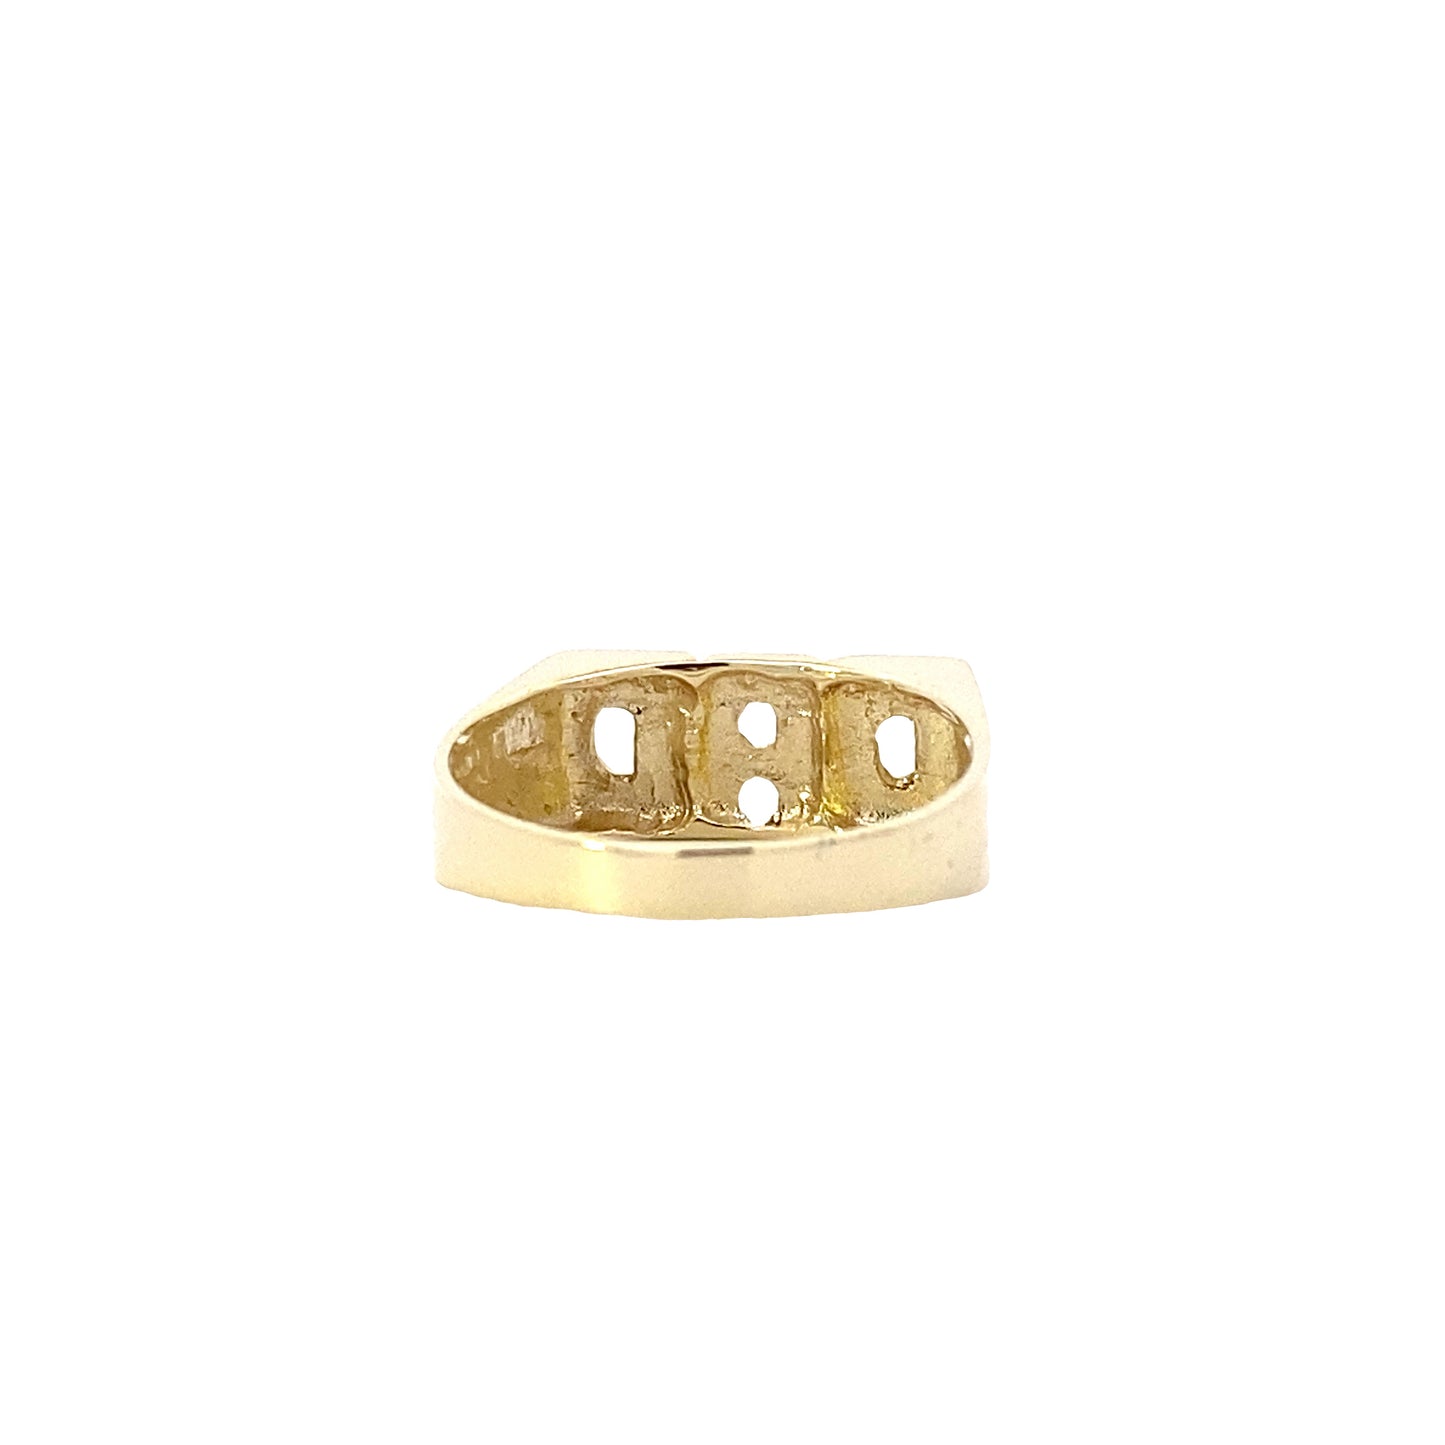 10K Yellow Gold "Dad" Ring